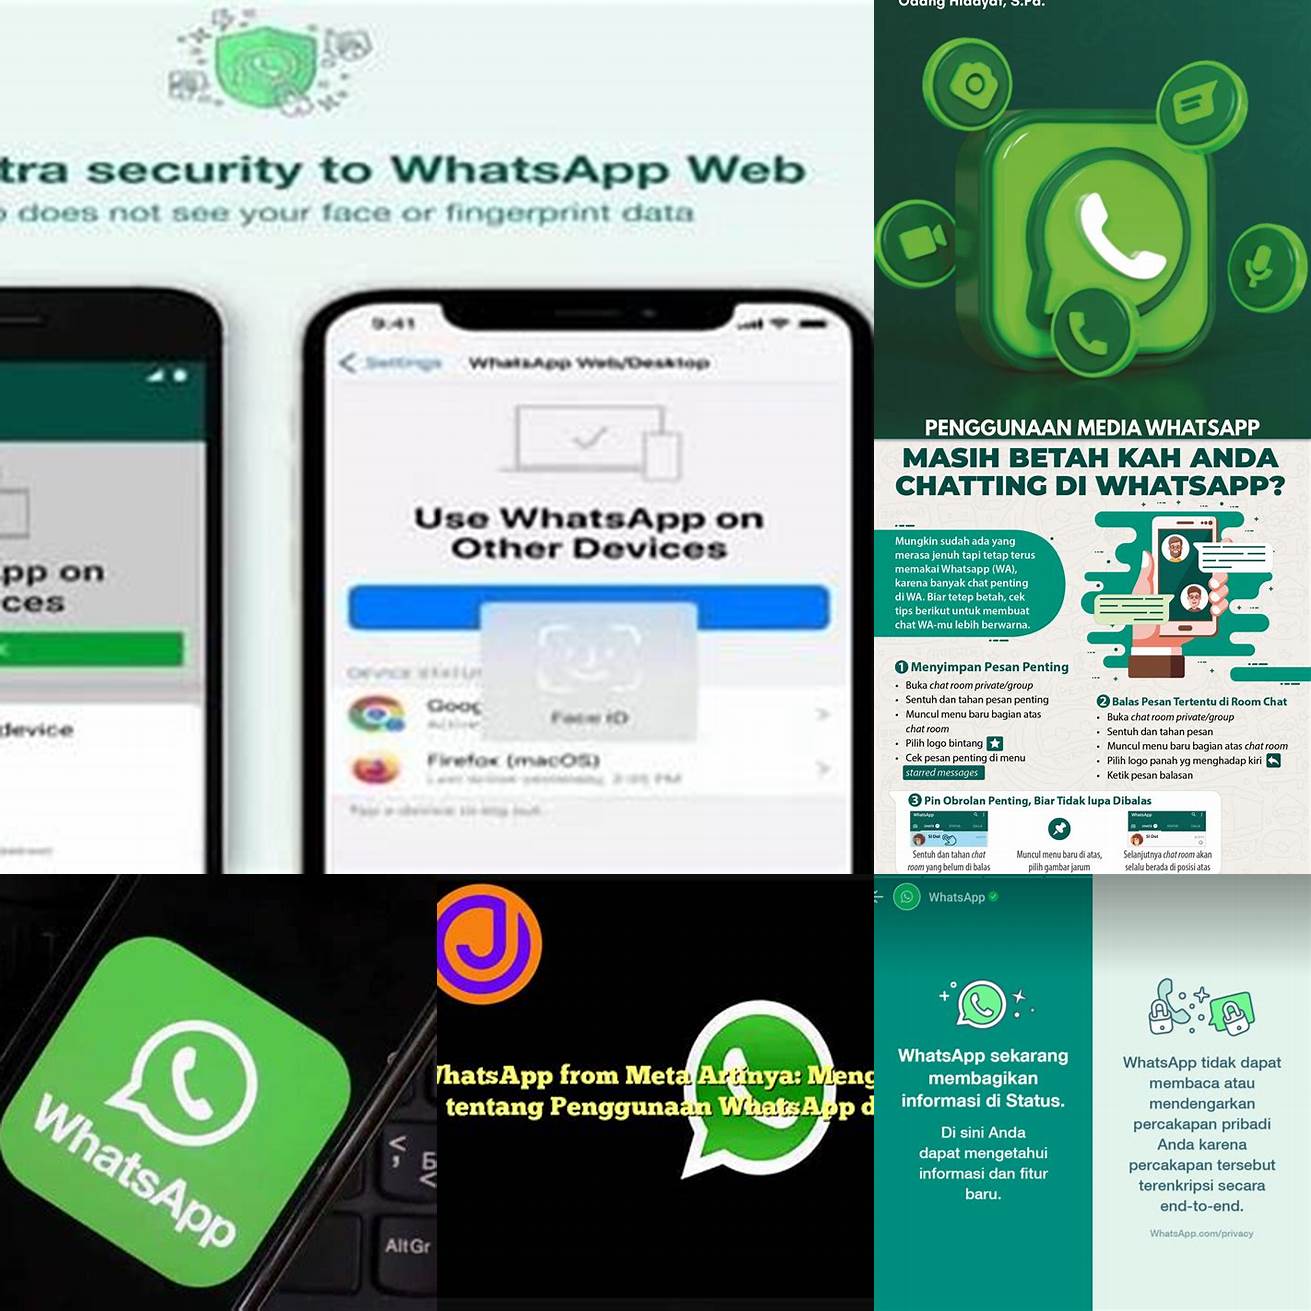 9 Ciptakan Aturan Keluarga tentang Penggunaan WhatsApp